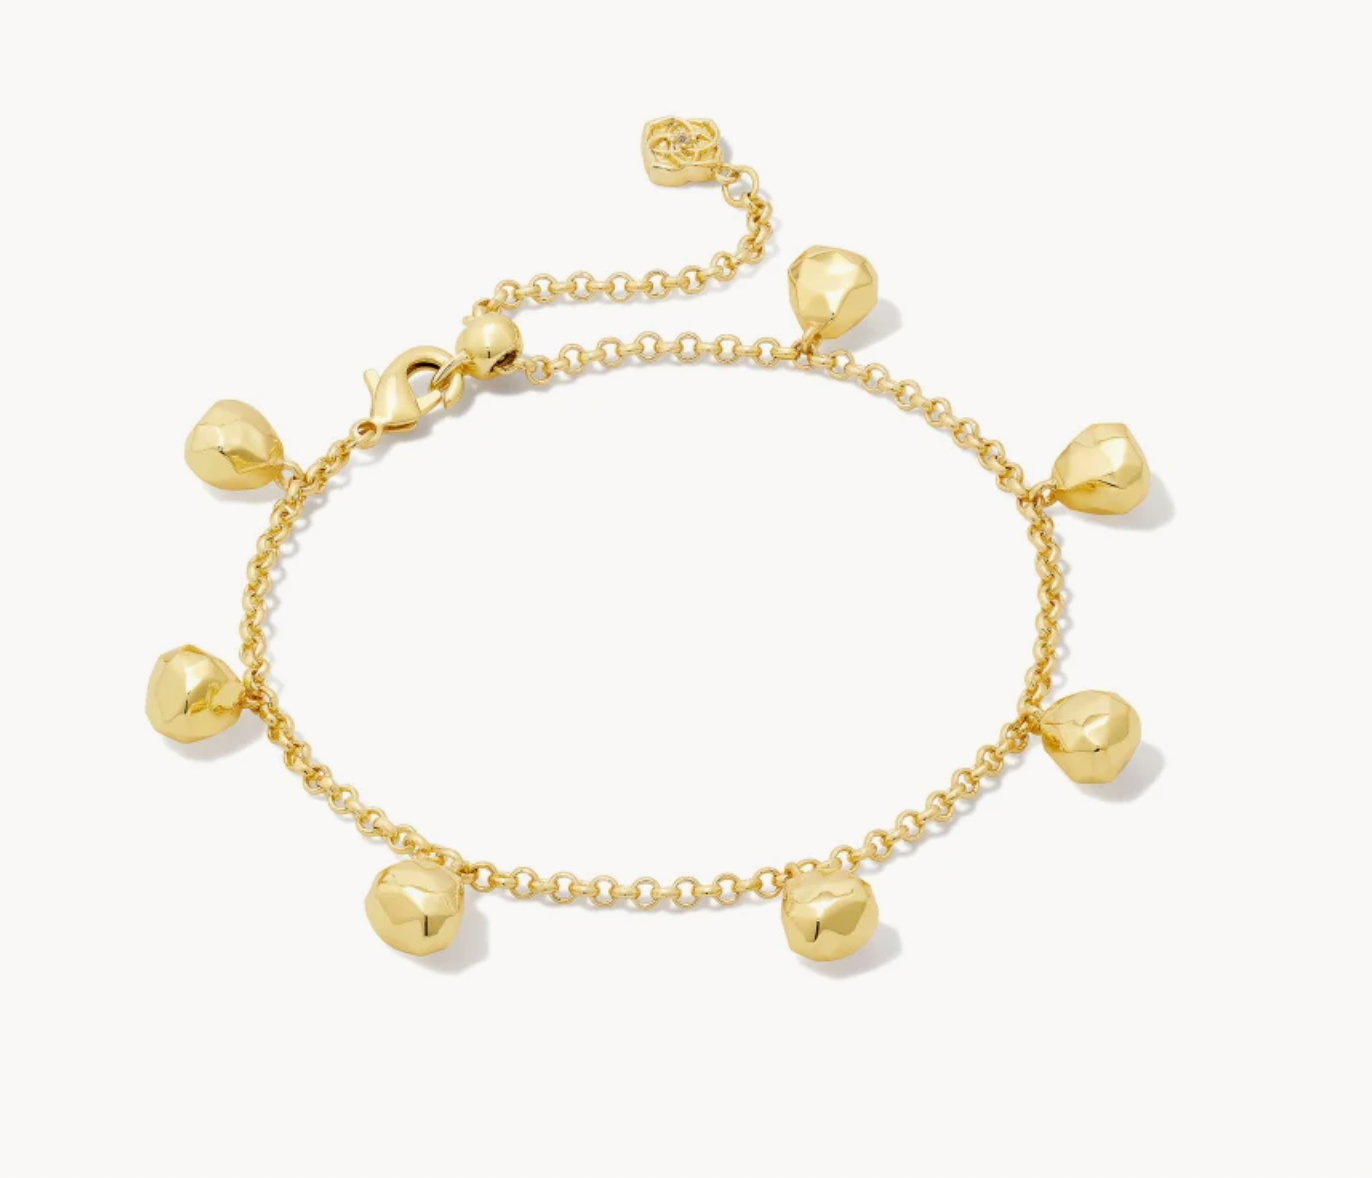 Kendra Scott Gabby Delicate Chain Bracelet in Gold